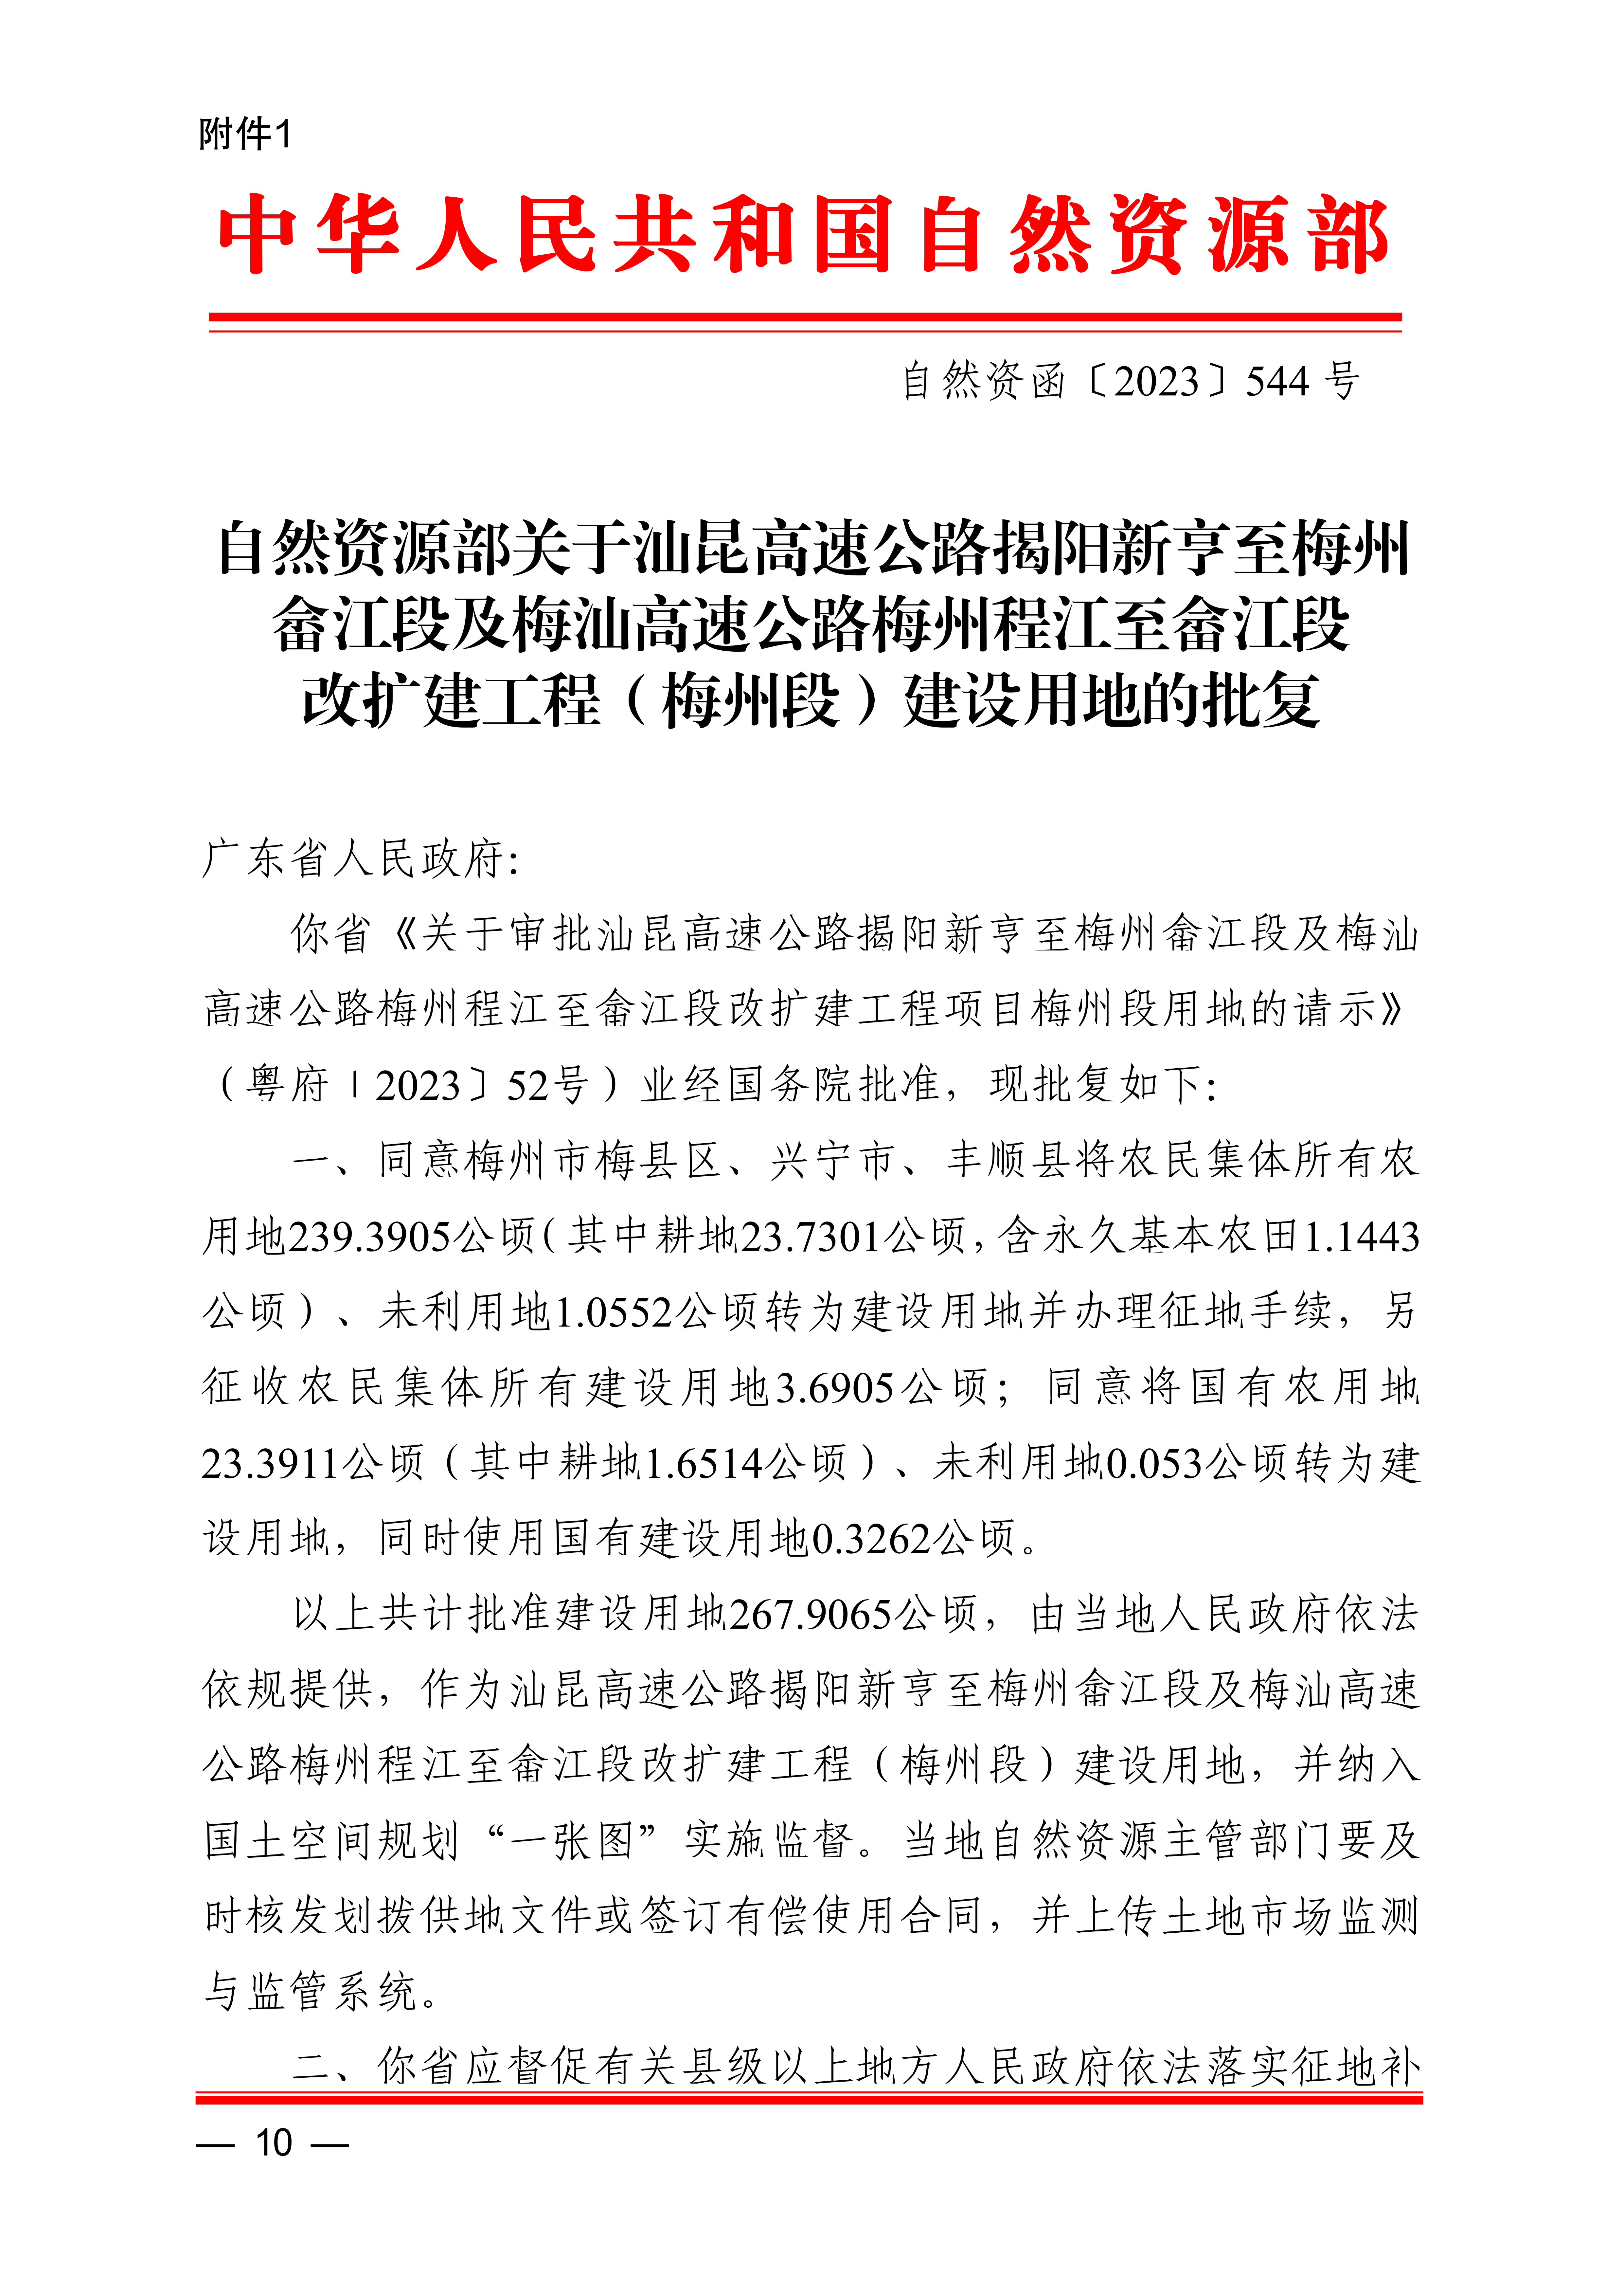 梅州市人民政府征收土地公告（梅市府征〔2023〕68号）张贴稿-10.png